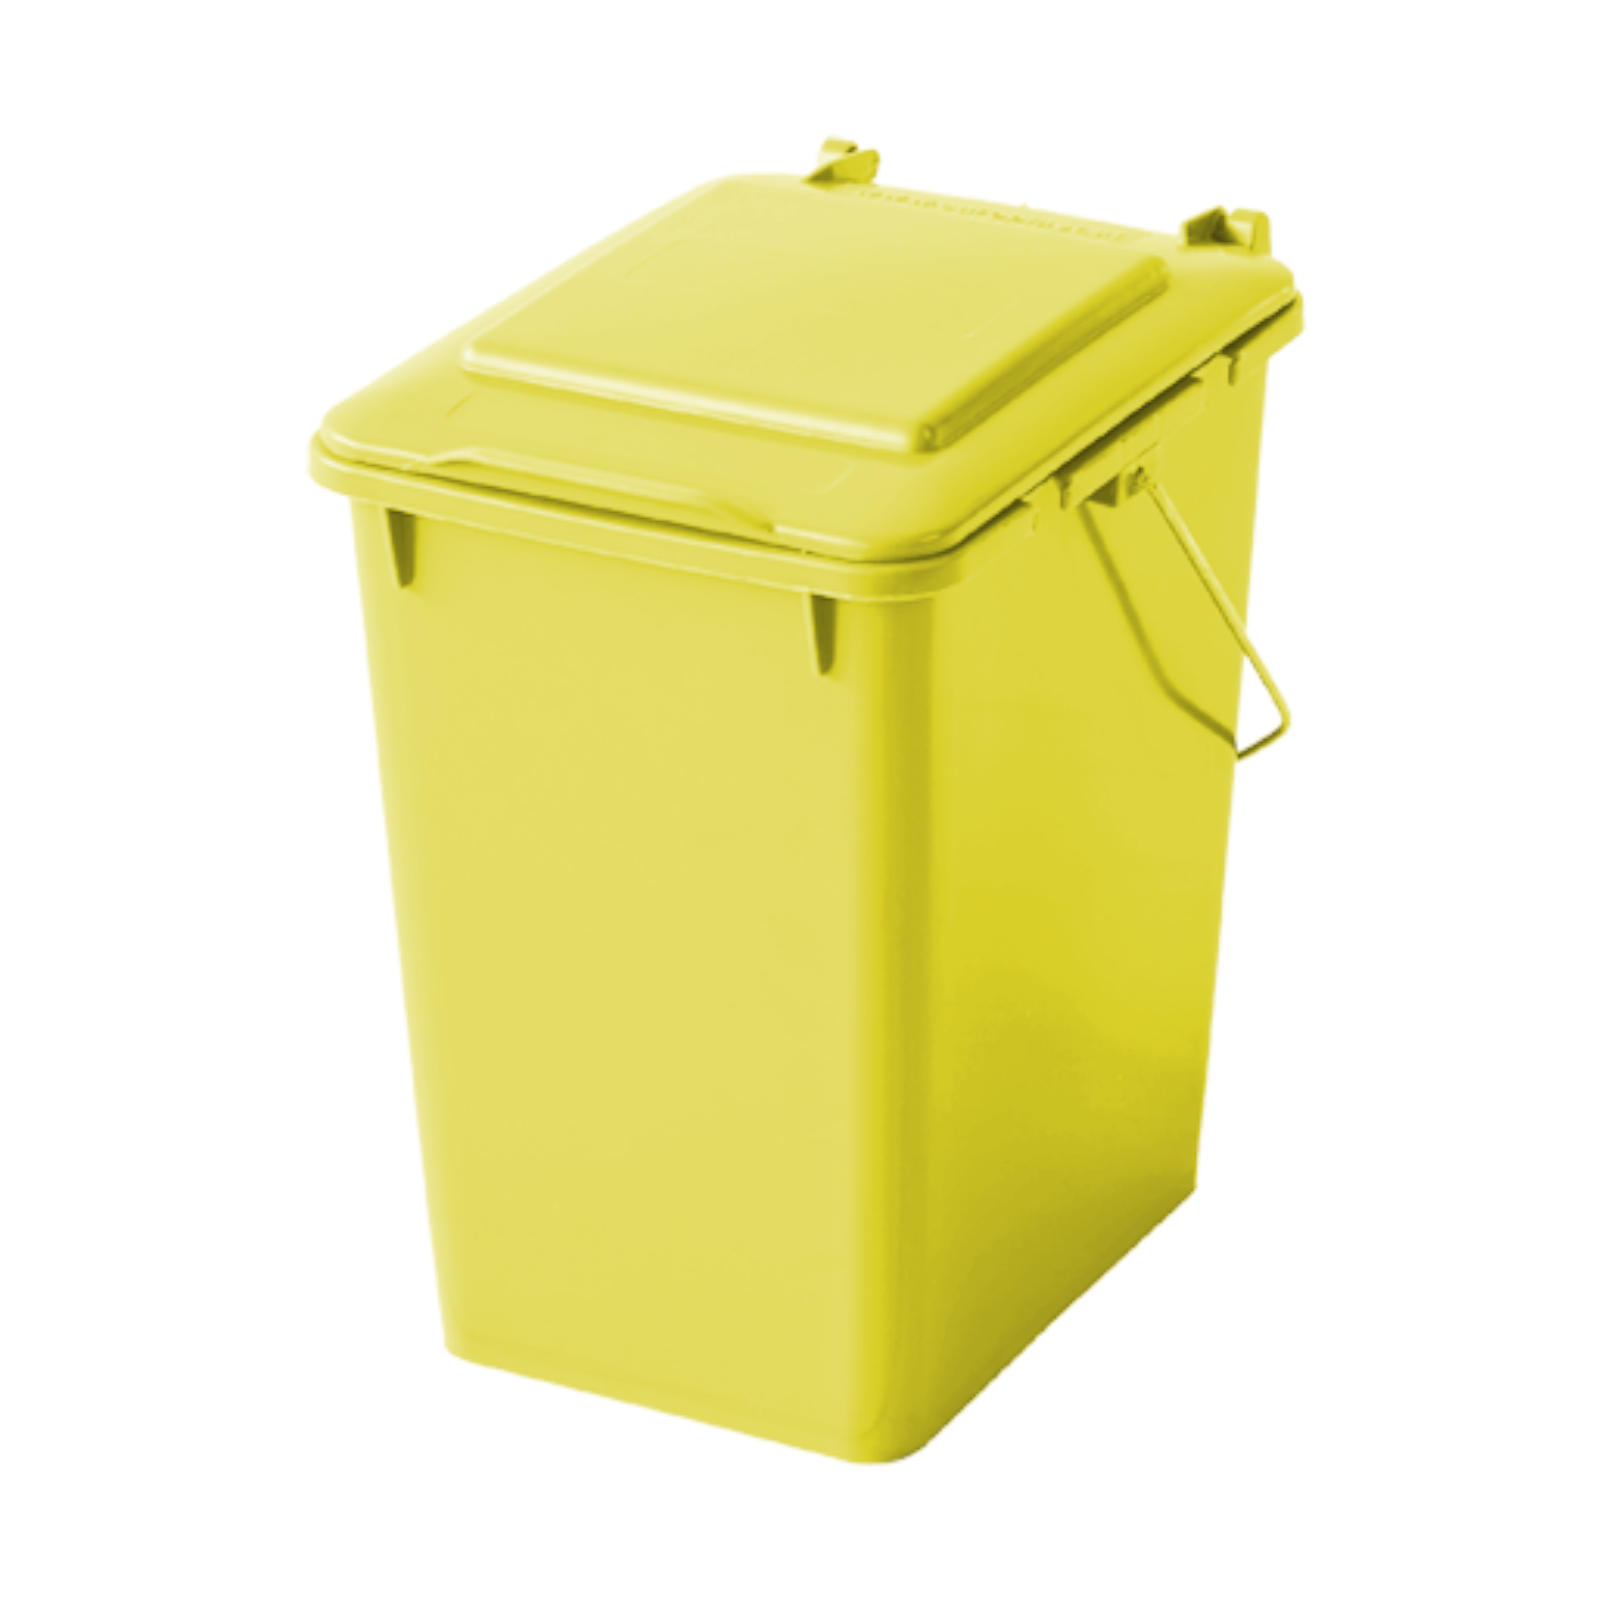 Kosz pojemnik do segregacji sortowania śmieci i odpadków - żółty 10L - sklep.odpady.org